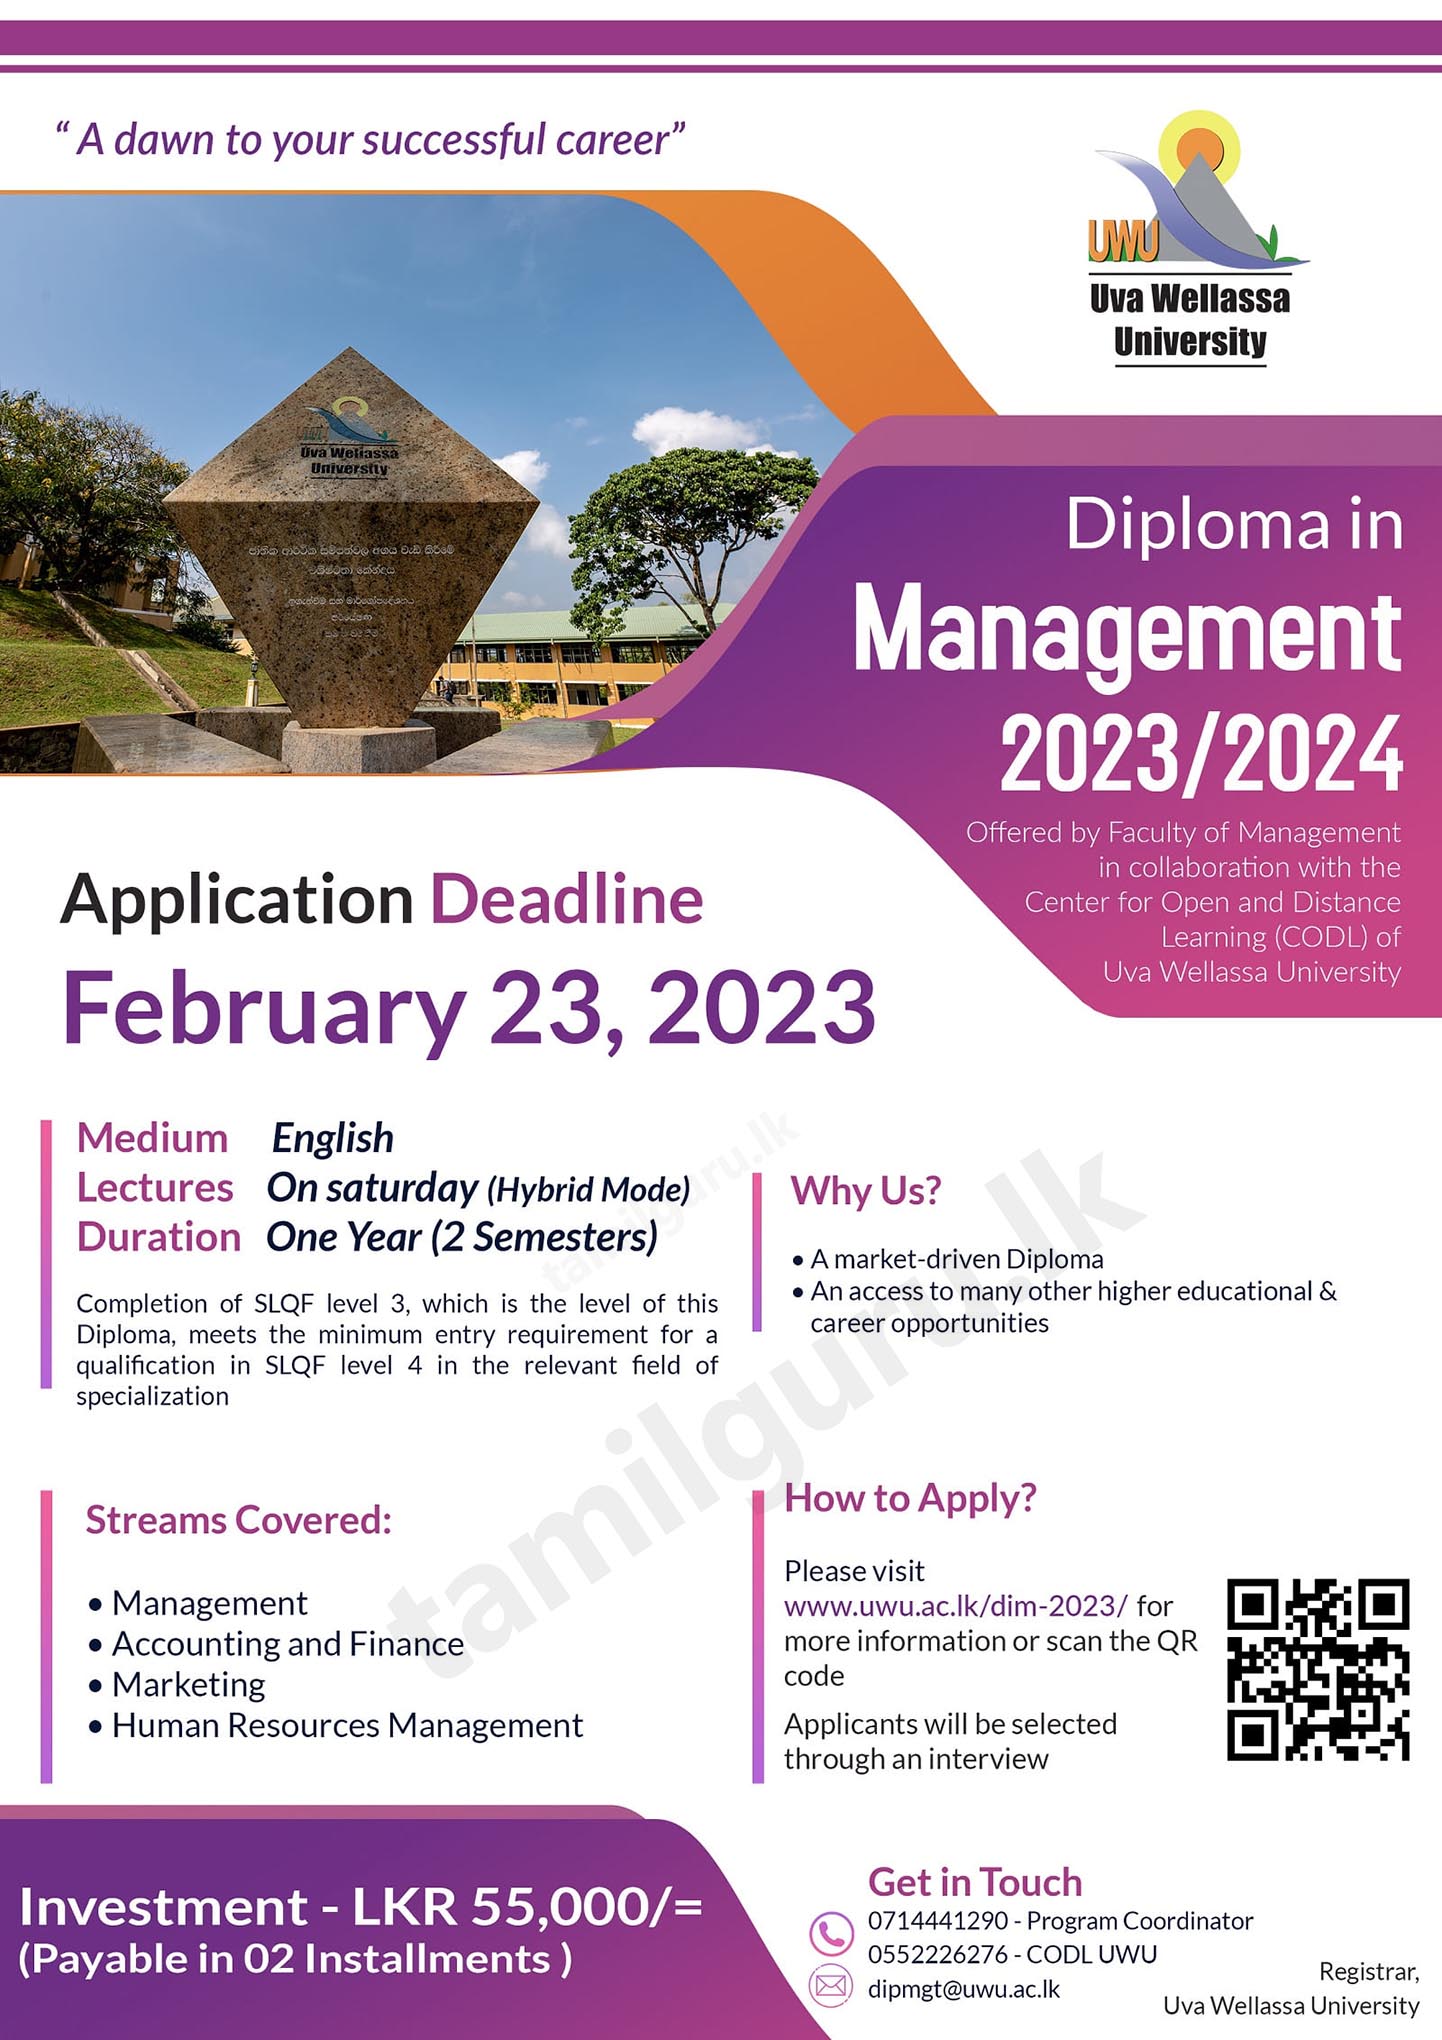 Diploma in Management (Course) 2023/2024 - Uva Wellassa University